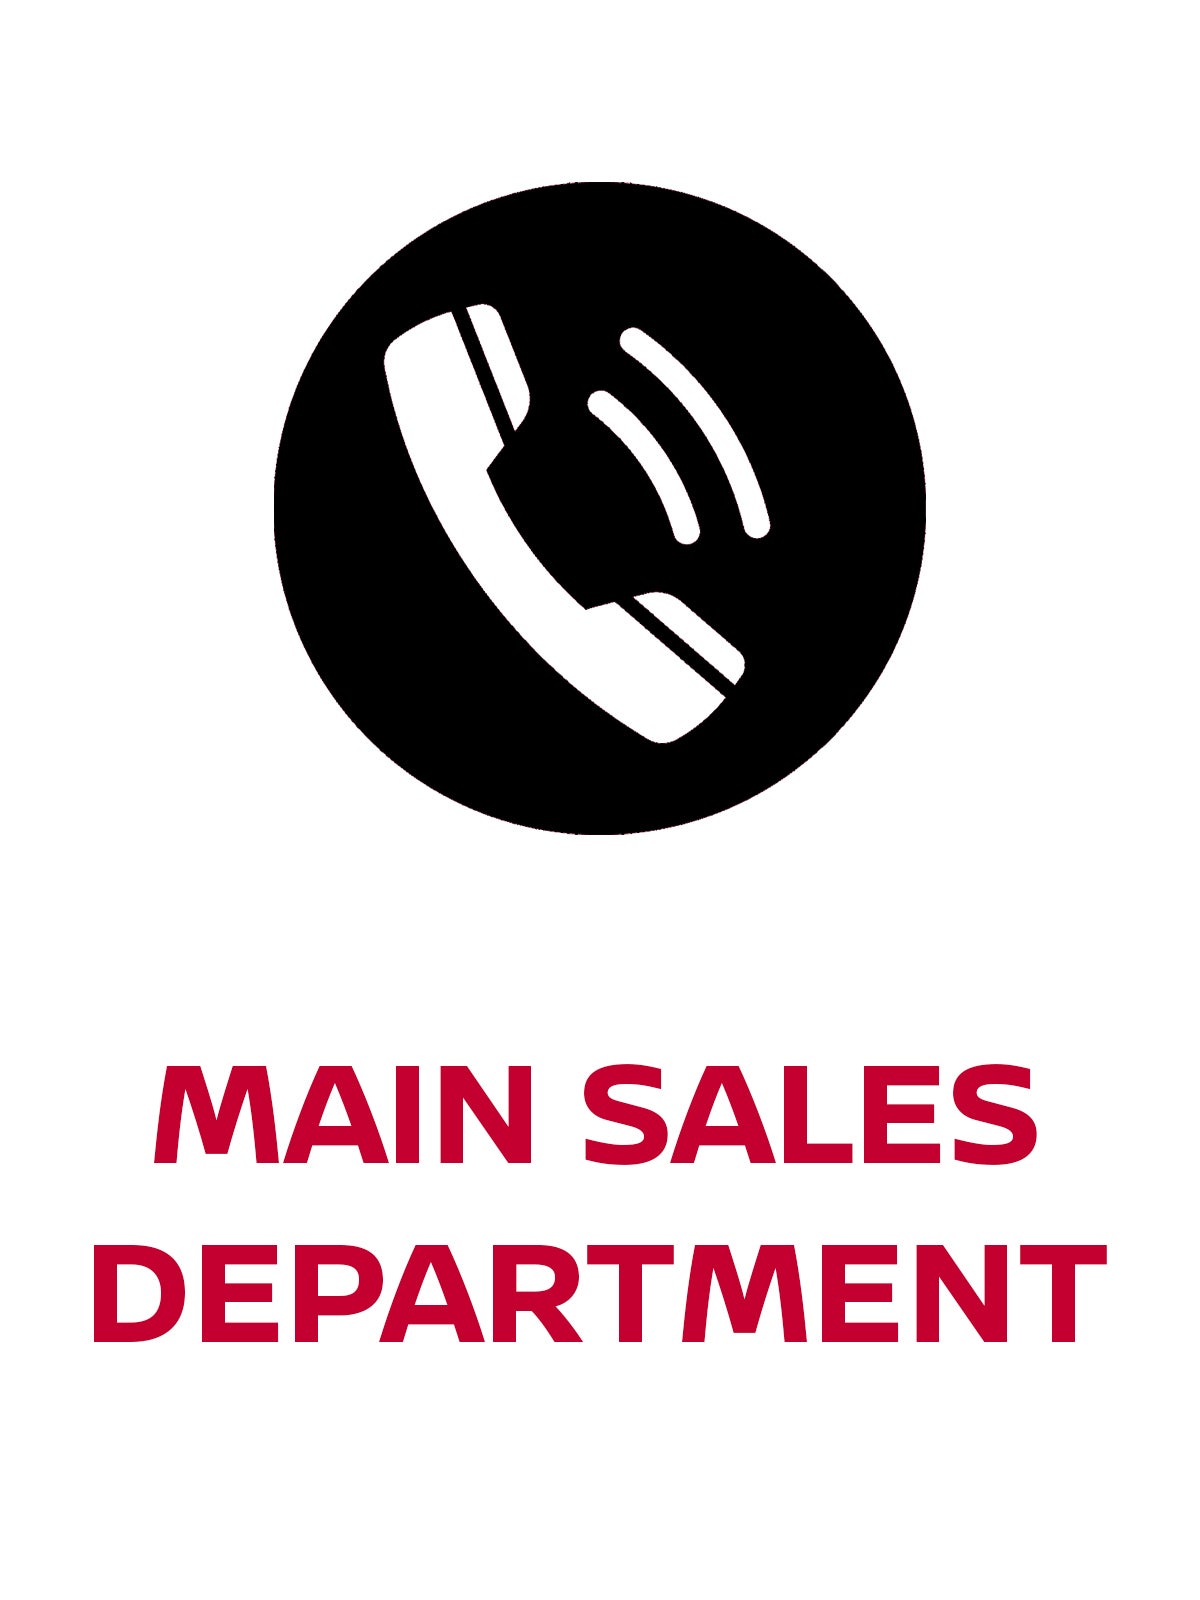 Main Sales Department